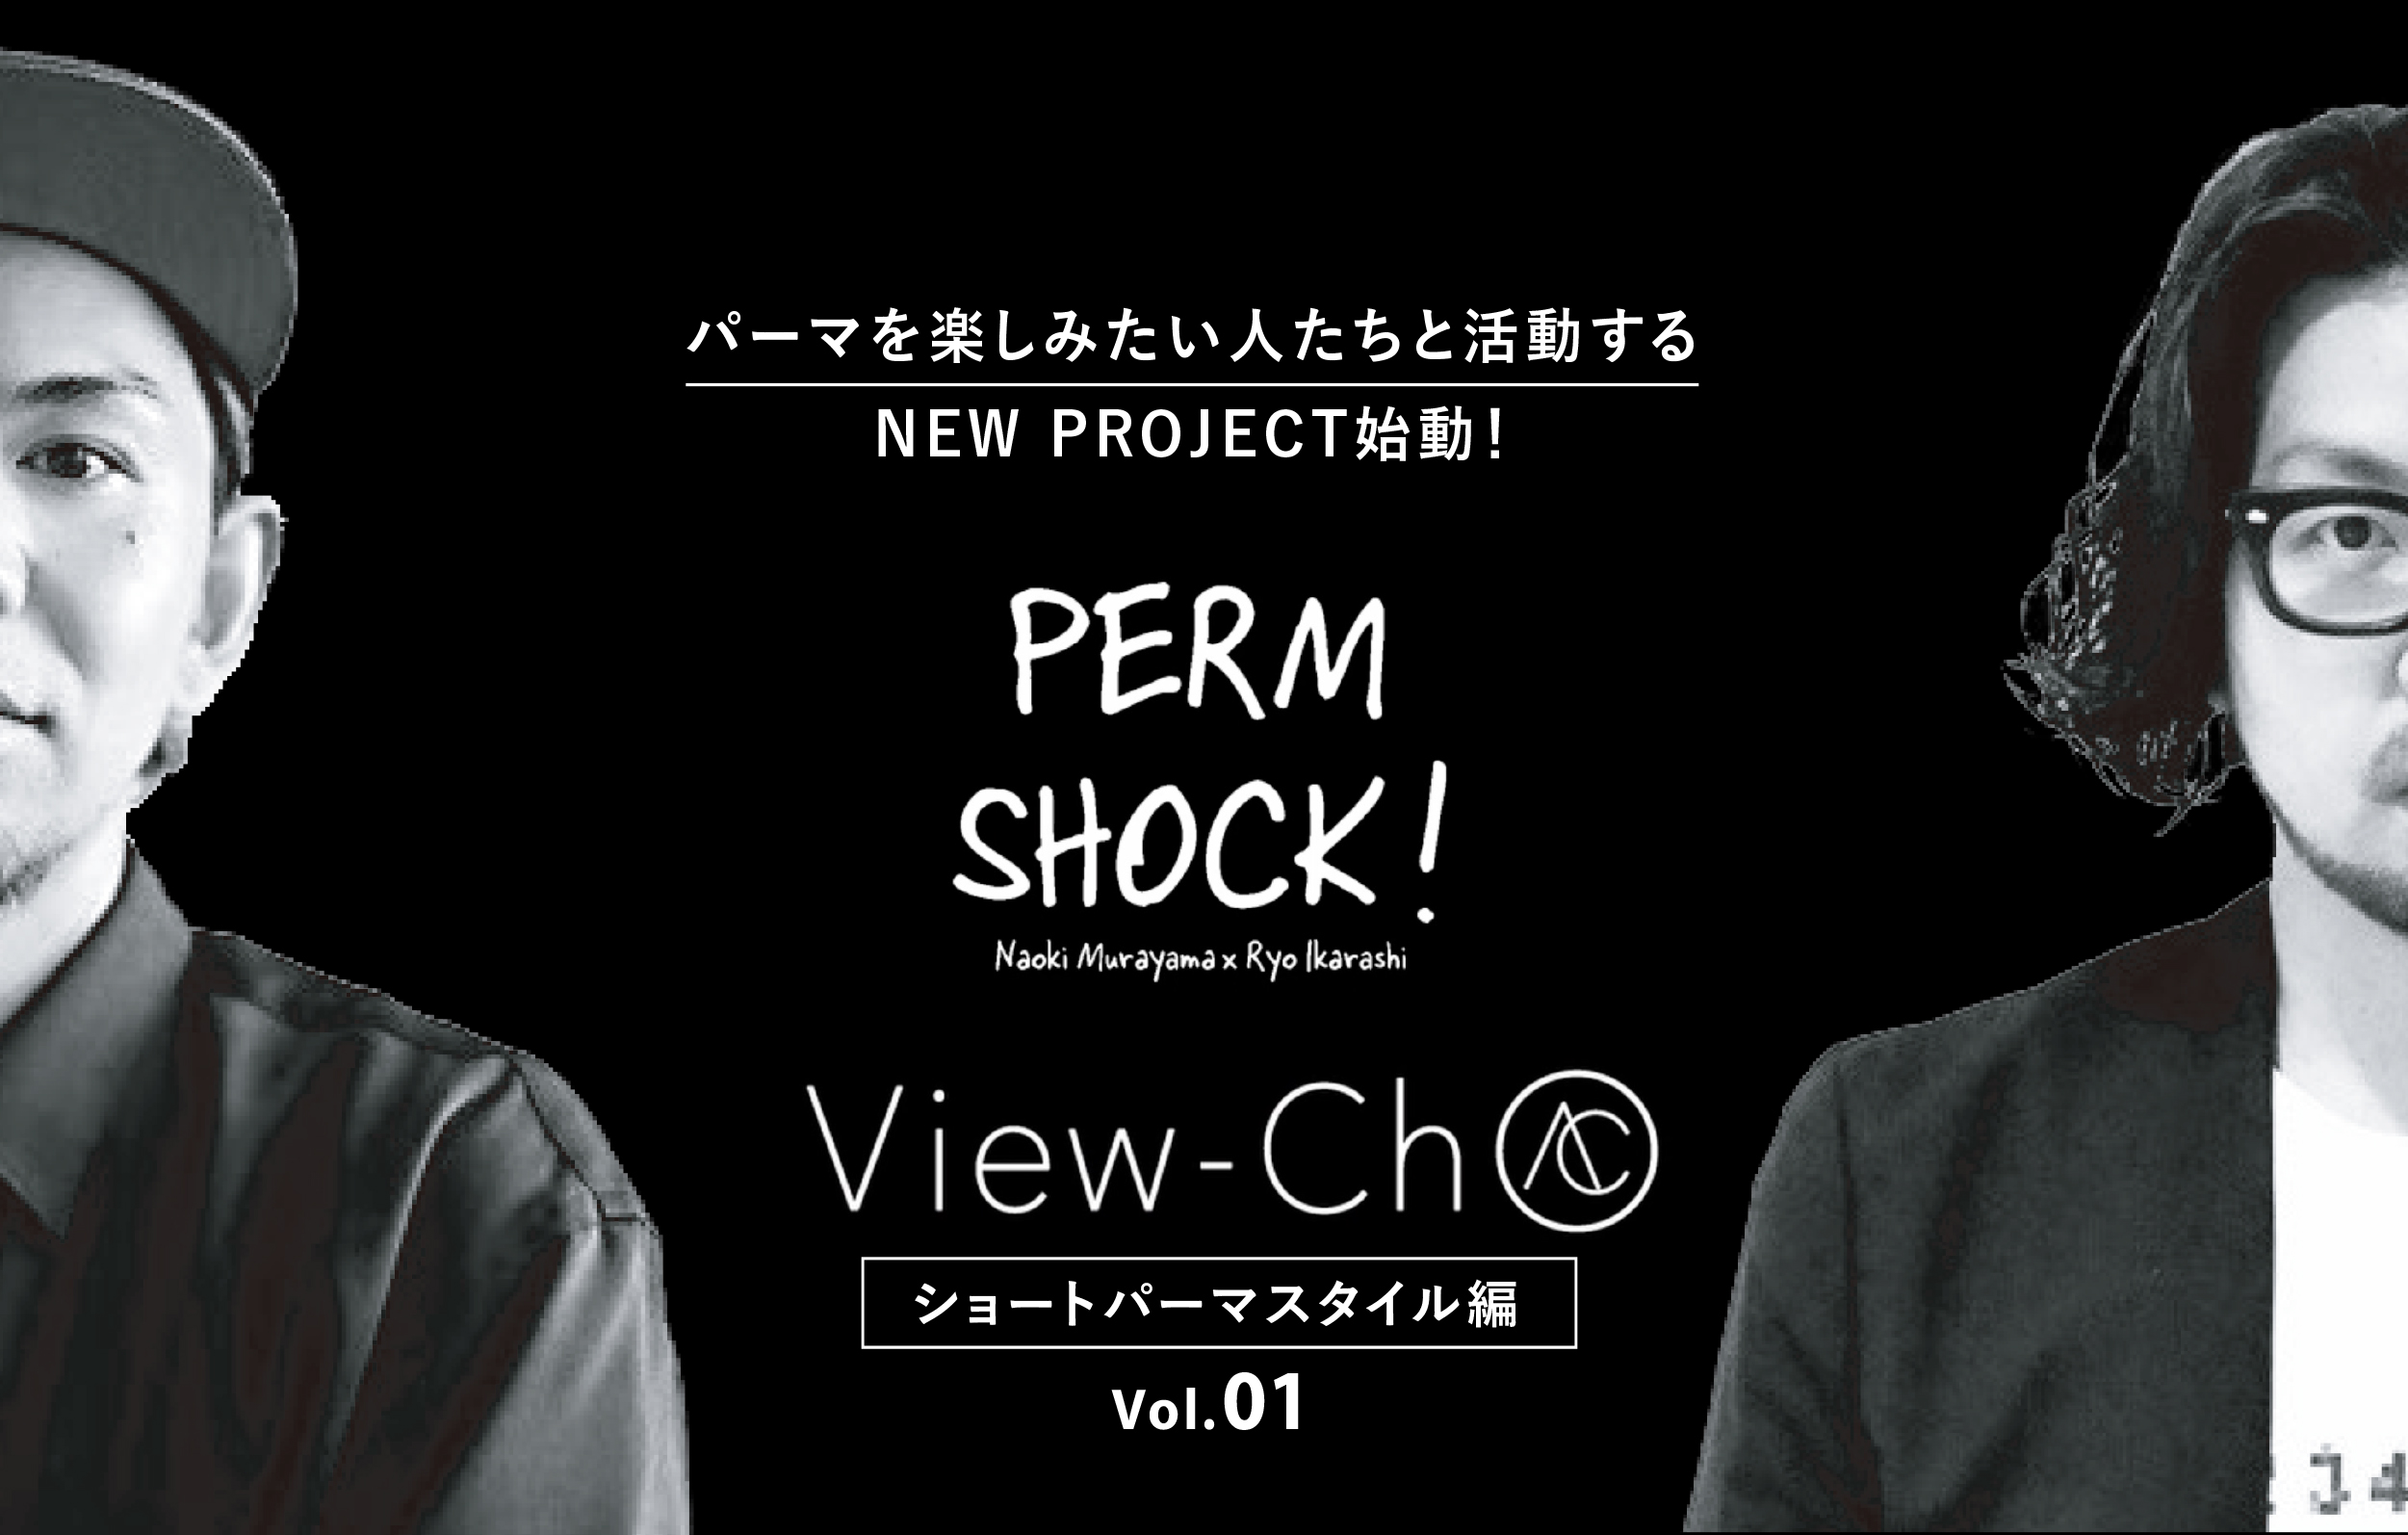 ショートパーマスタイルby PERM SHOCK vol.01